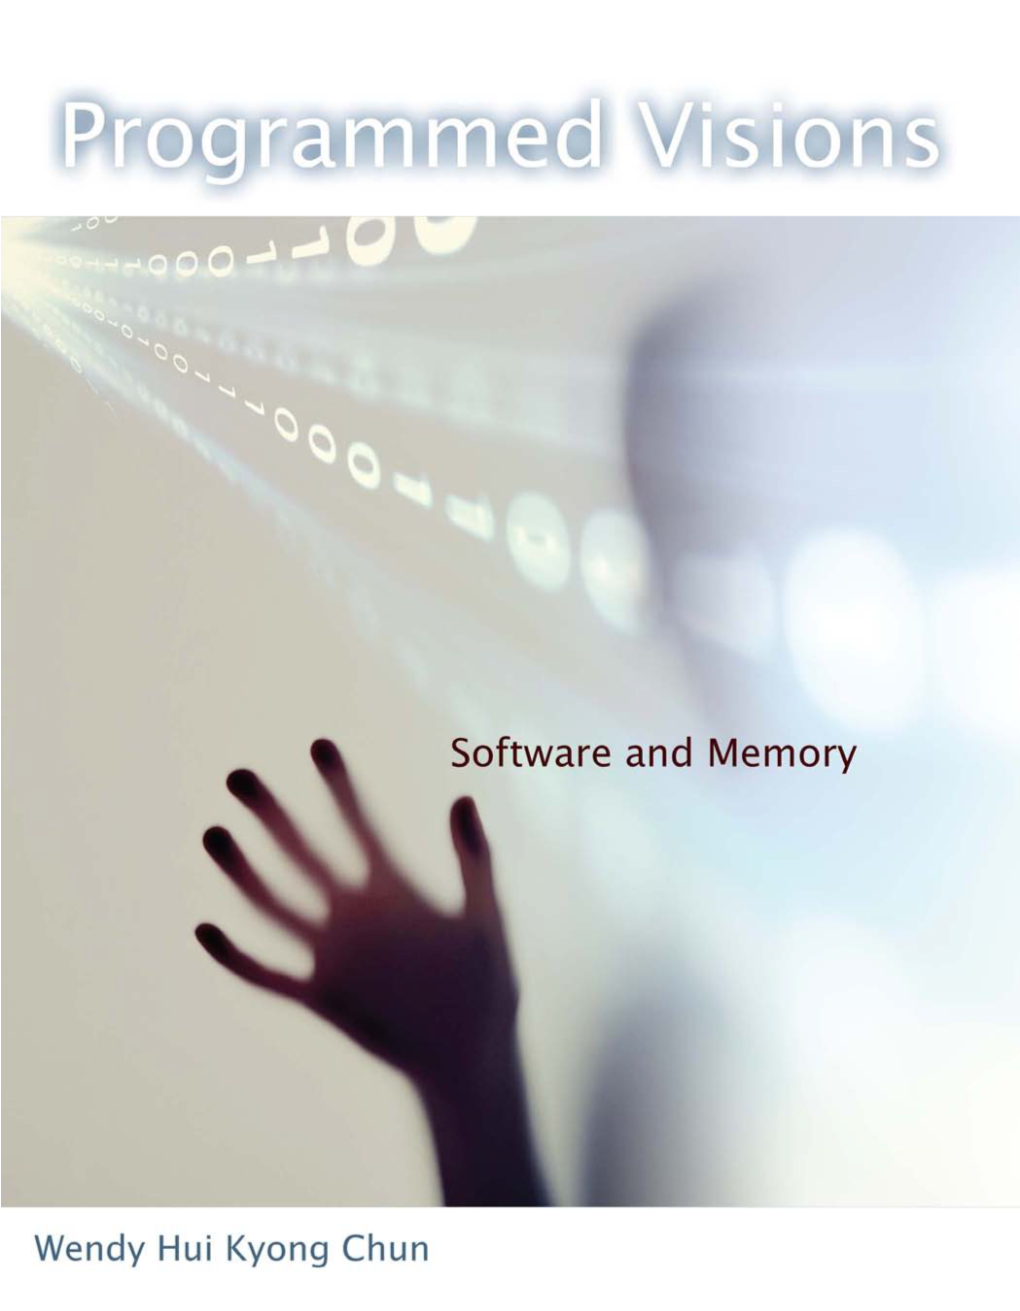 Programmed Visions: Software and Memory Wendy Hui Kyong Chun, 2011 Programmed Visions